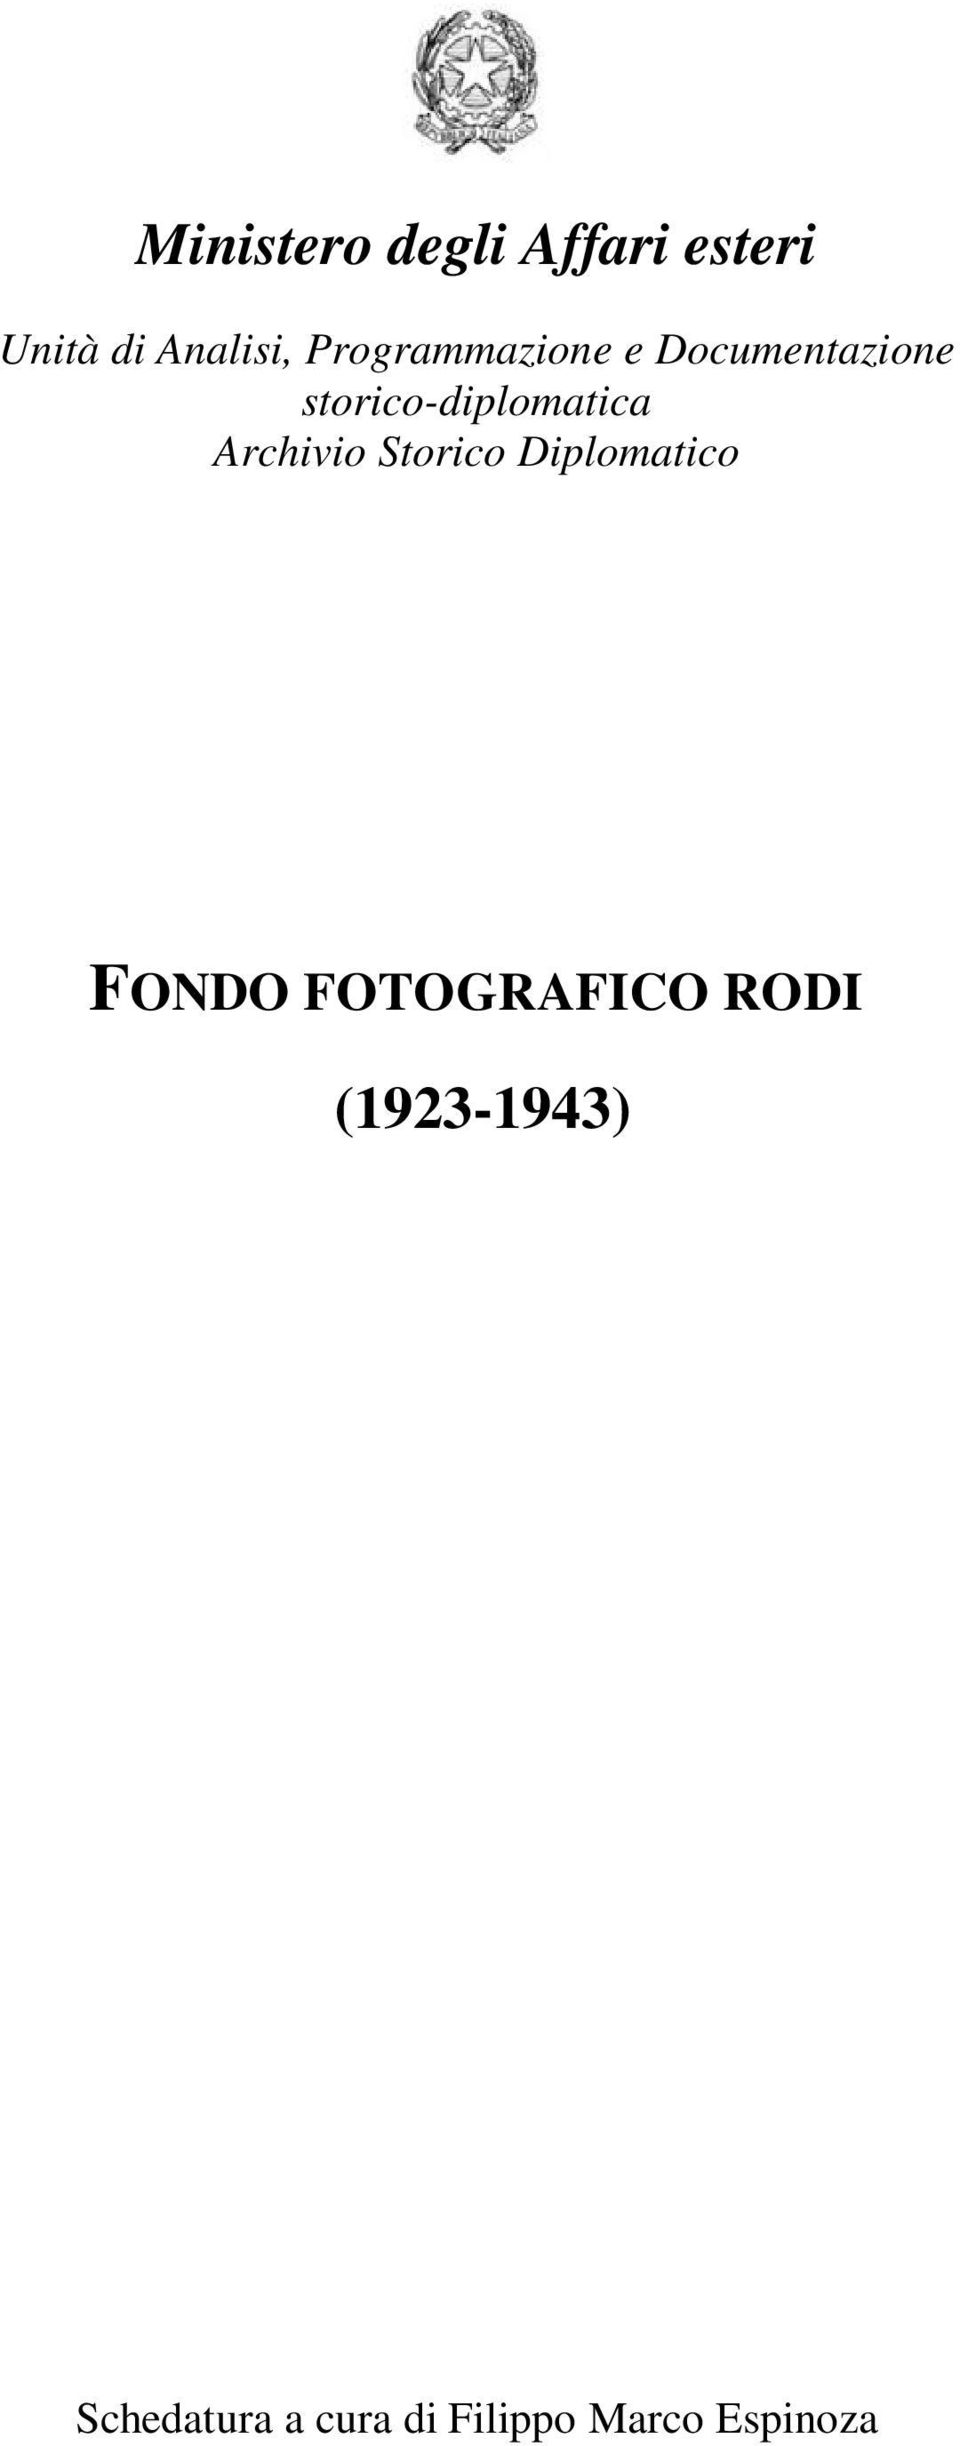 Archivio Storico Diplomatico FONDO FOTOGRAFICO RODI